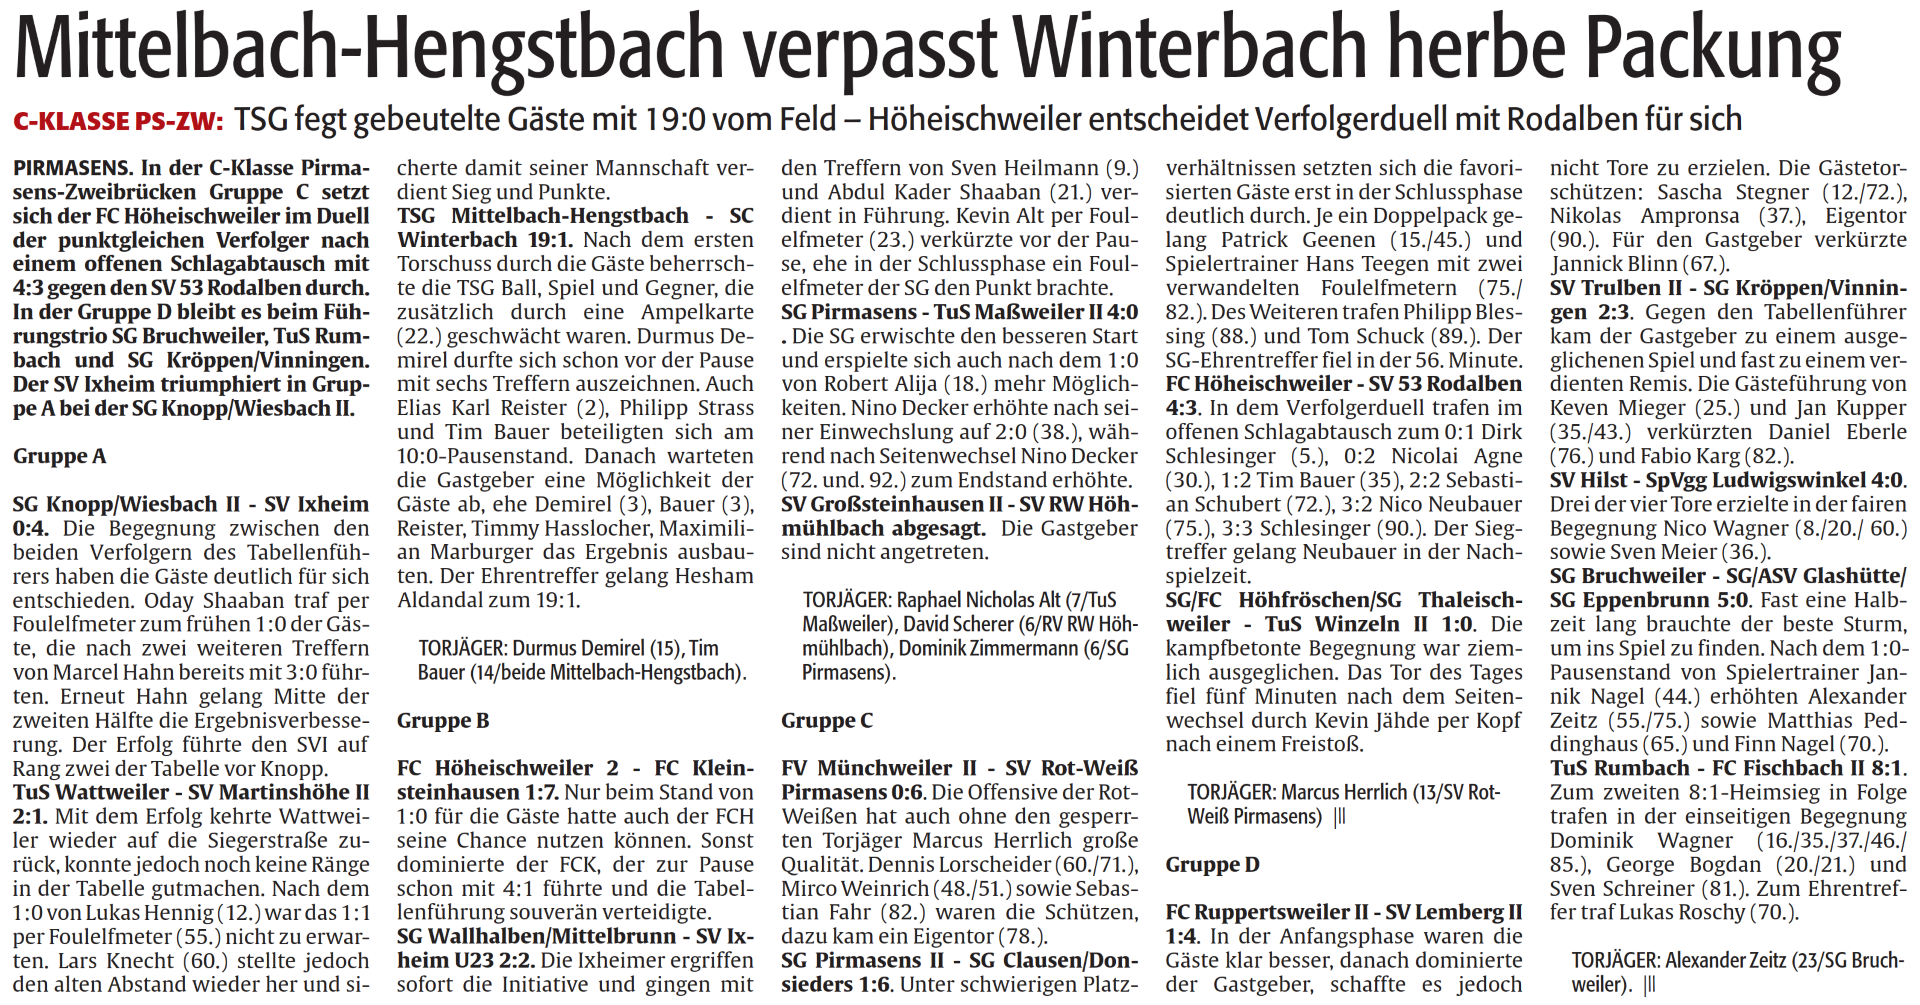 Mittelbach Hengstbach verpasst Winterbach herbe Packung